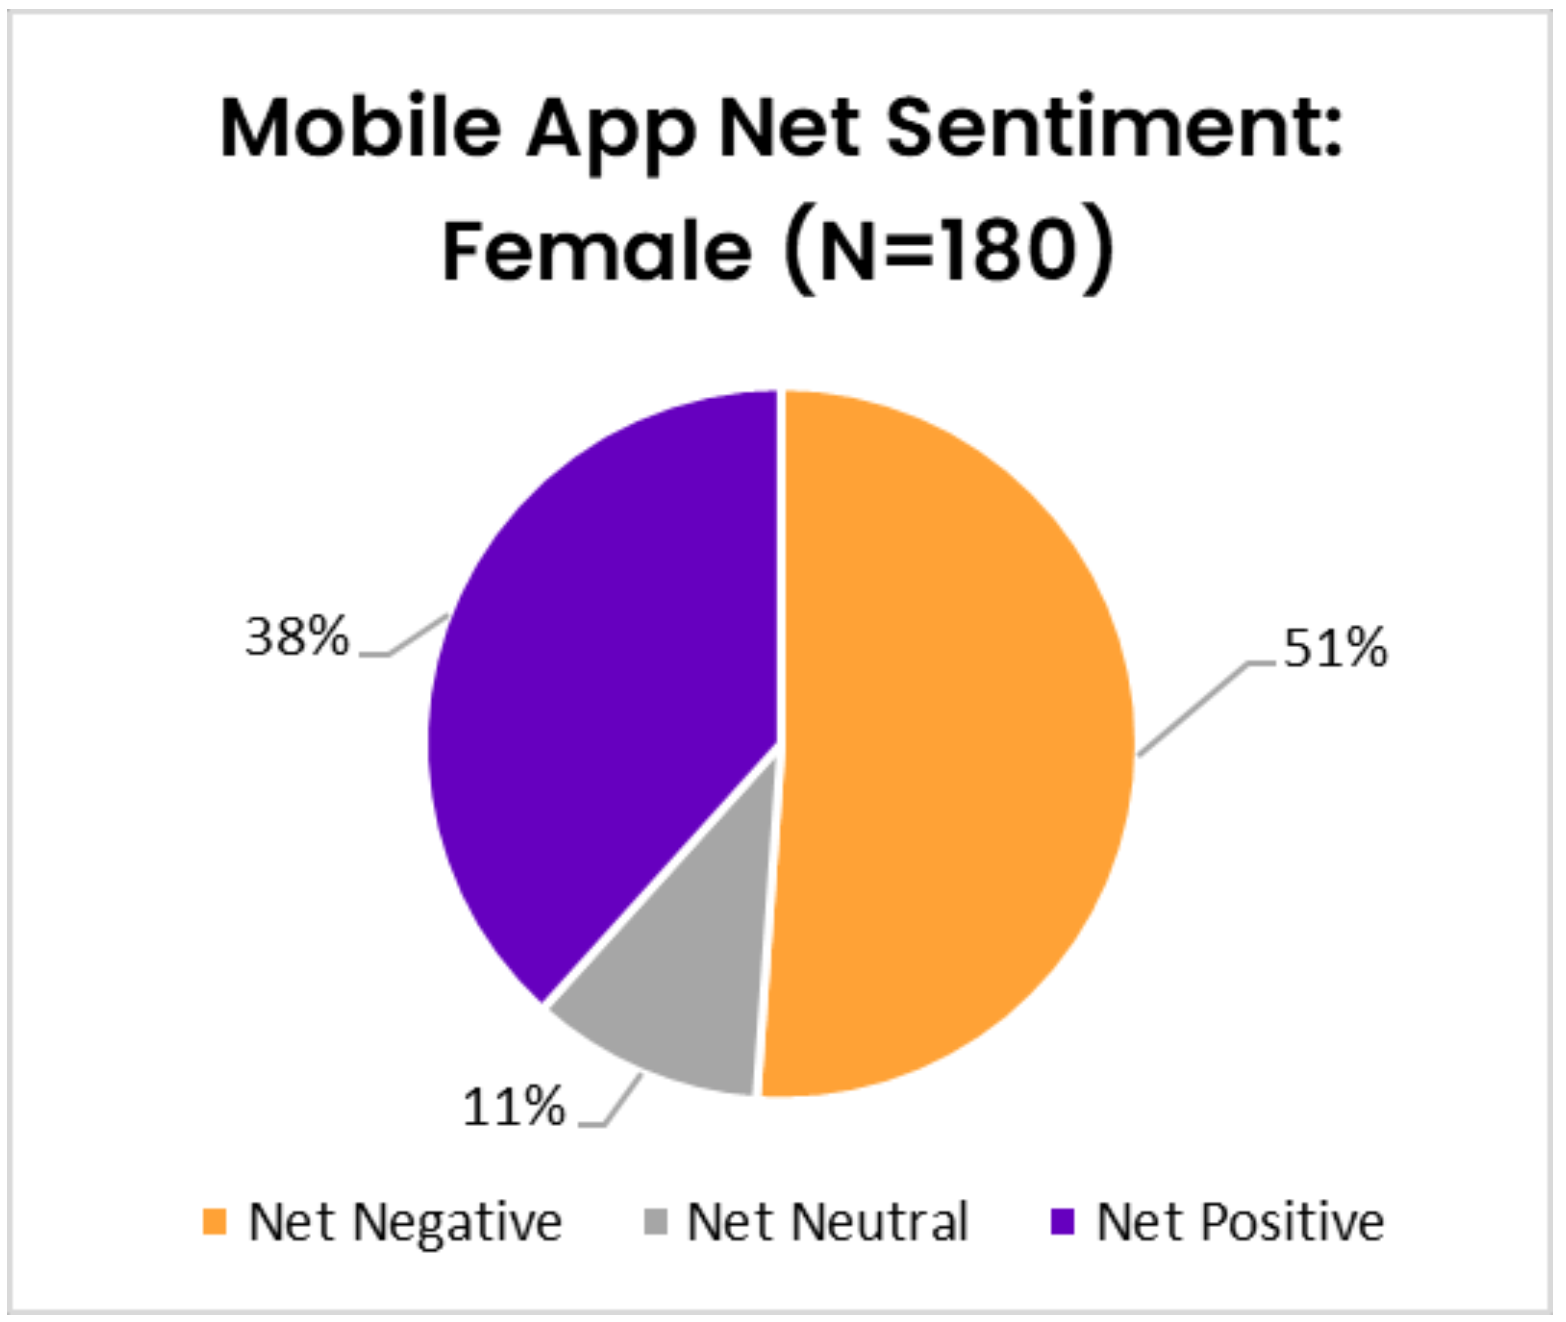 Figure 7- Mobile App Net Sentiment - Female